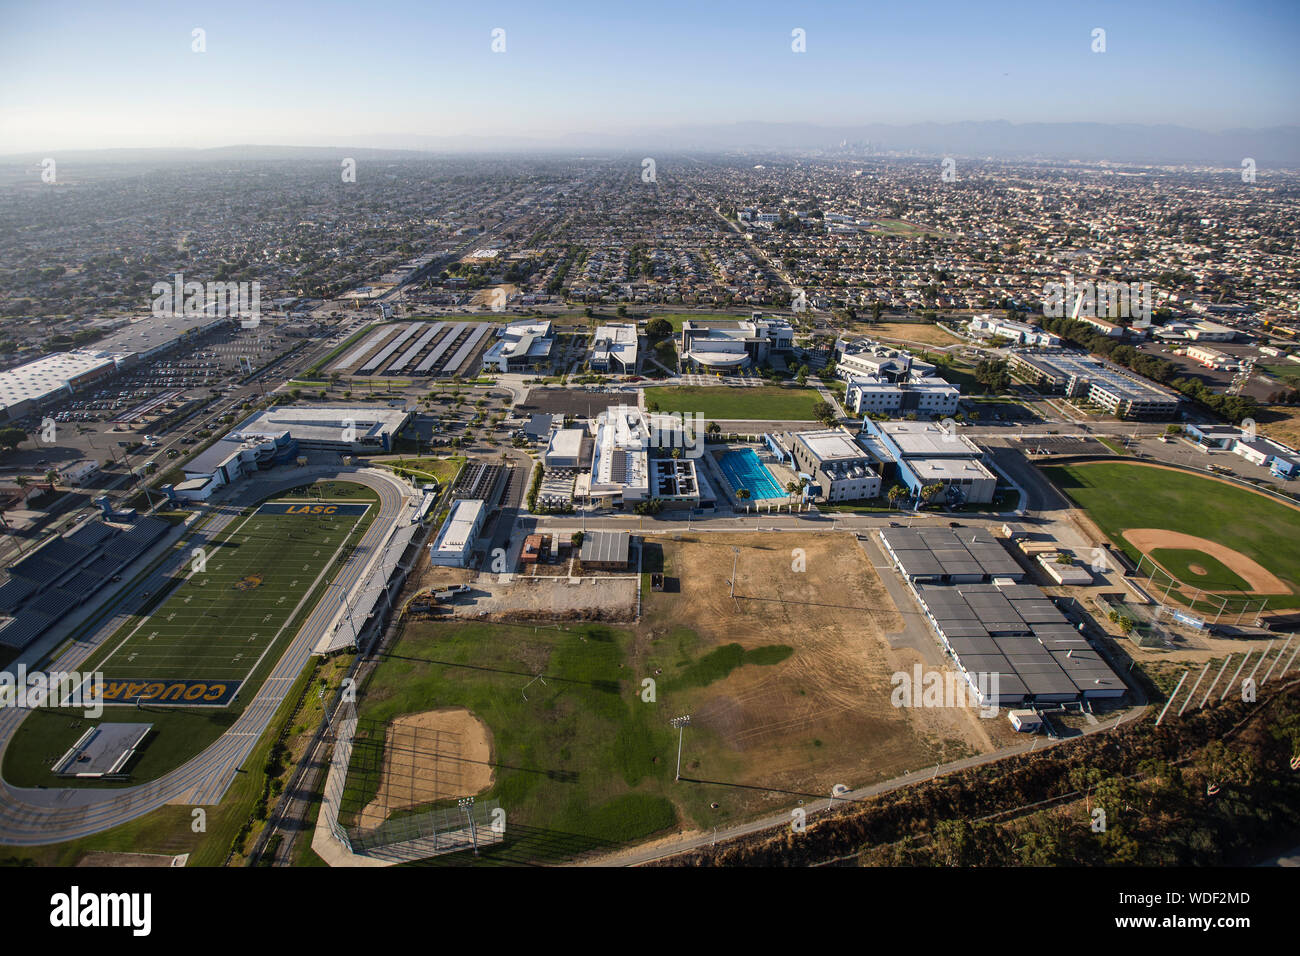 Los Angeles, Kalifornien, USA - 7. August 2017: Luftaufnahme von Los Angeles Southwest College Campus in Südkalifornien. Stockfoto